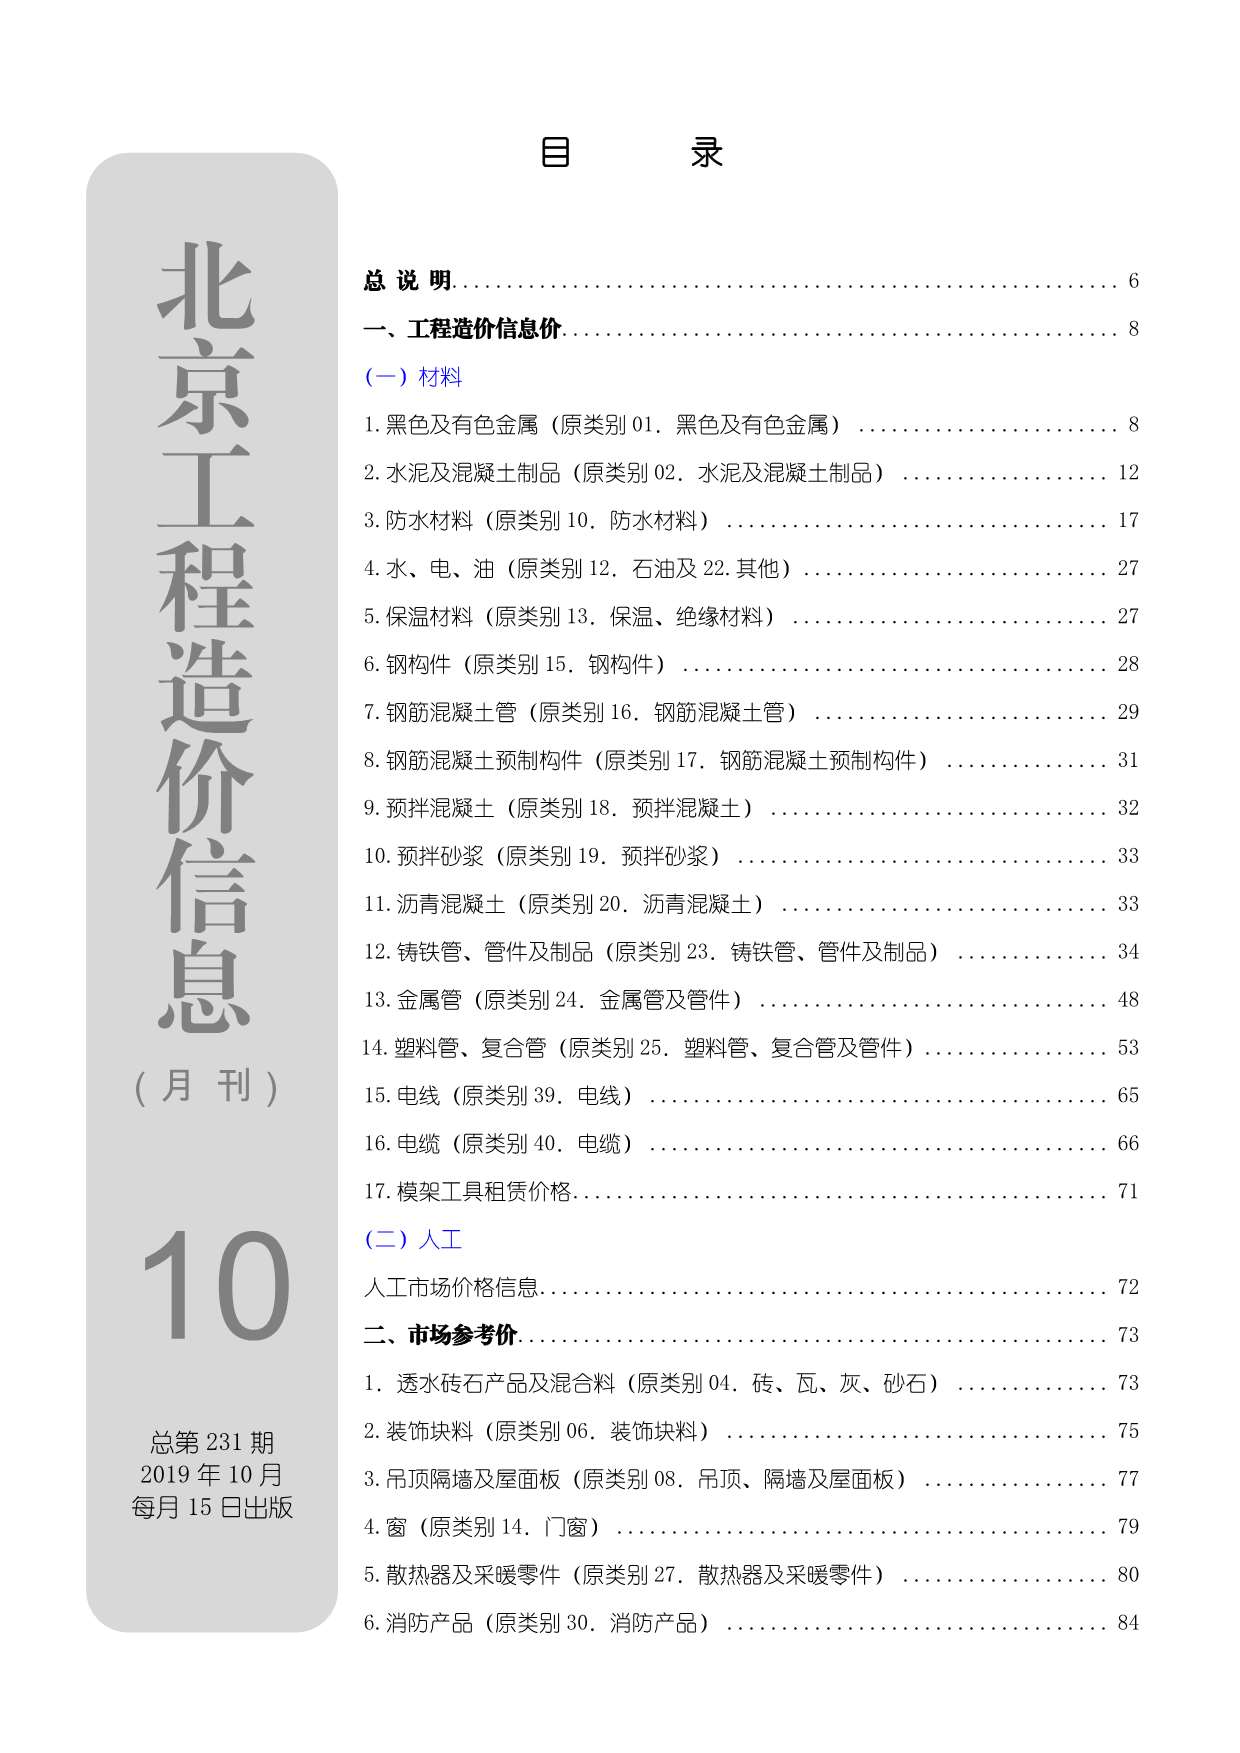 北京市2019年10月工程信息价_北京市信息价期刊PDF扫描件电子版